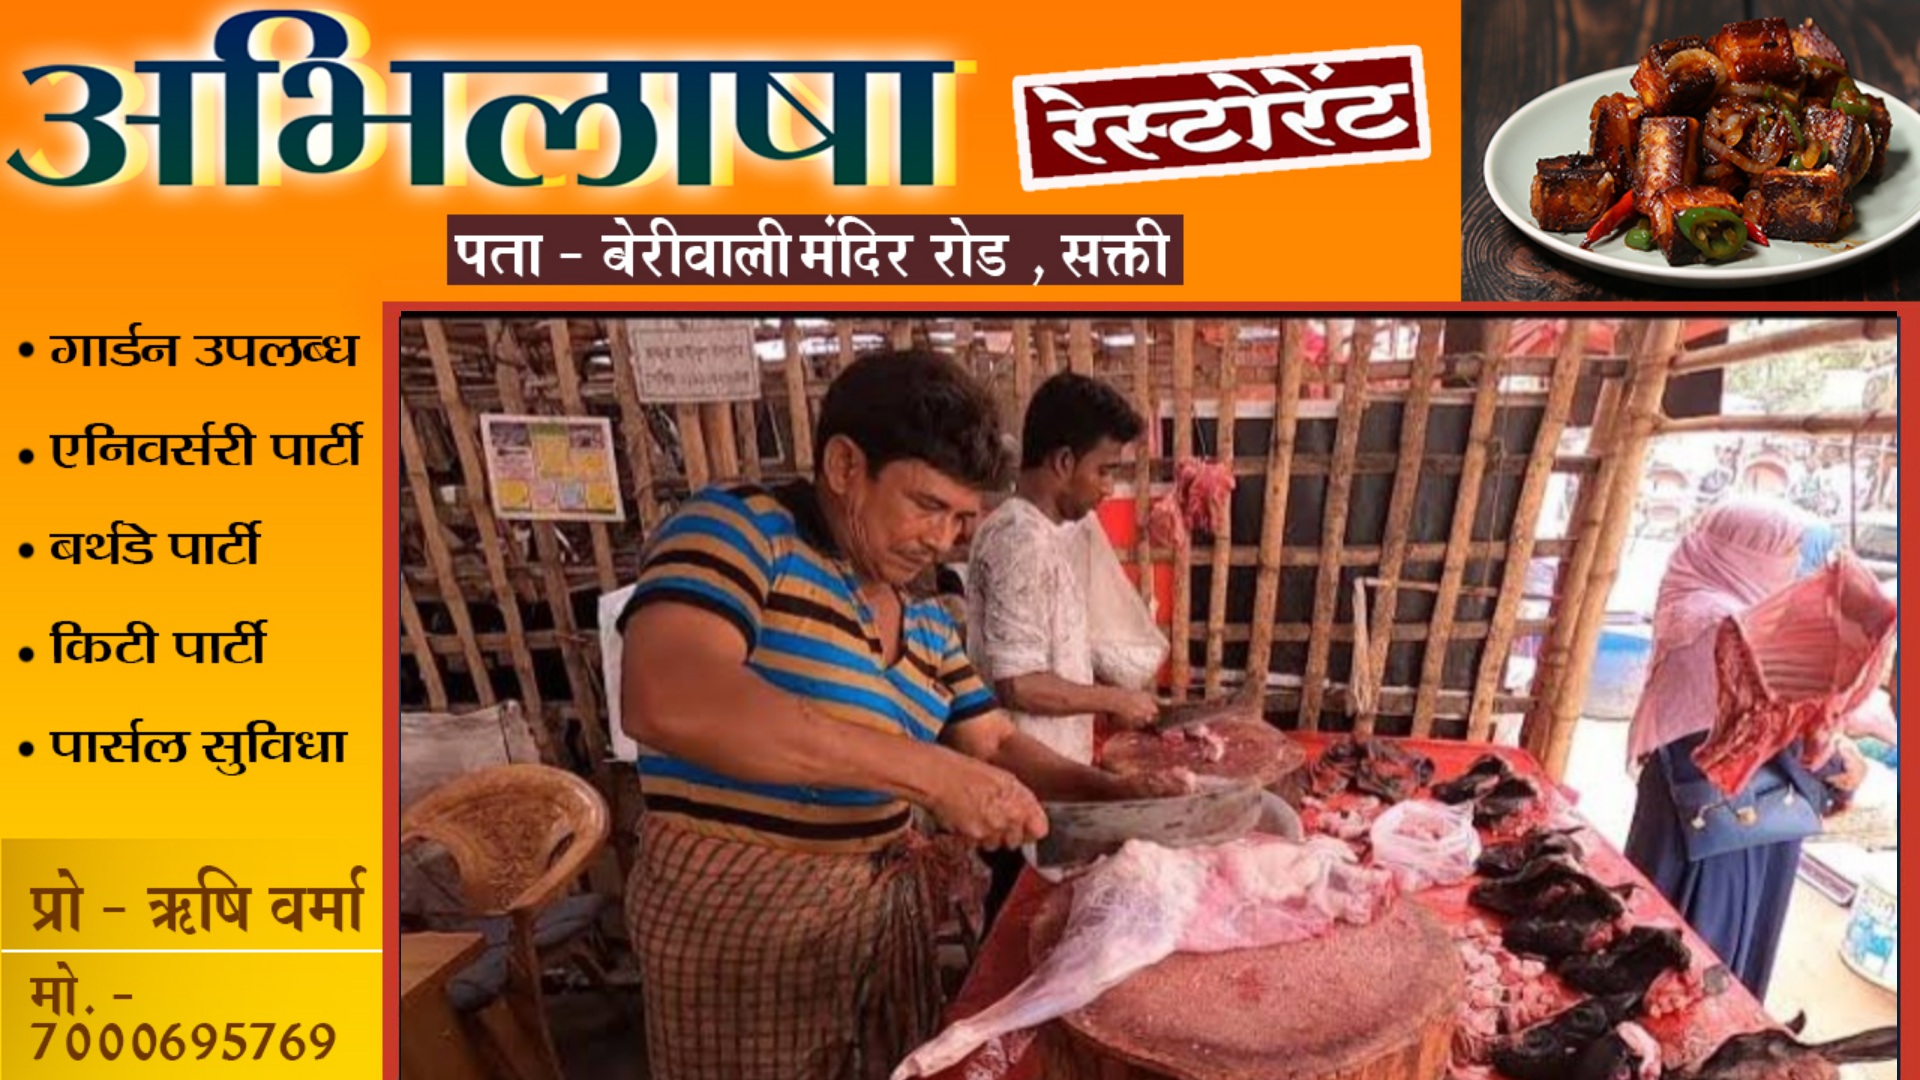 छत्तीसगढ़ - मांस- मटन की दुकानों के लिए गाइडलाइन जारी , अब खुले में नही की जा सकेगी मांस- मटन की बिक्री